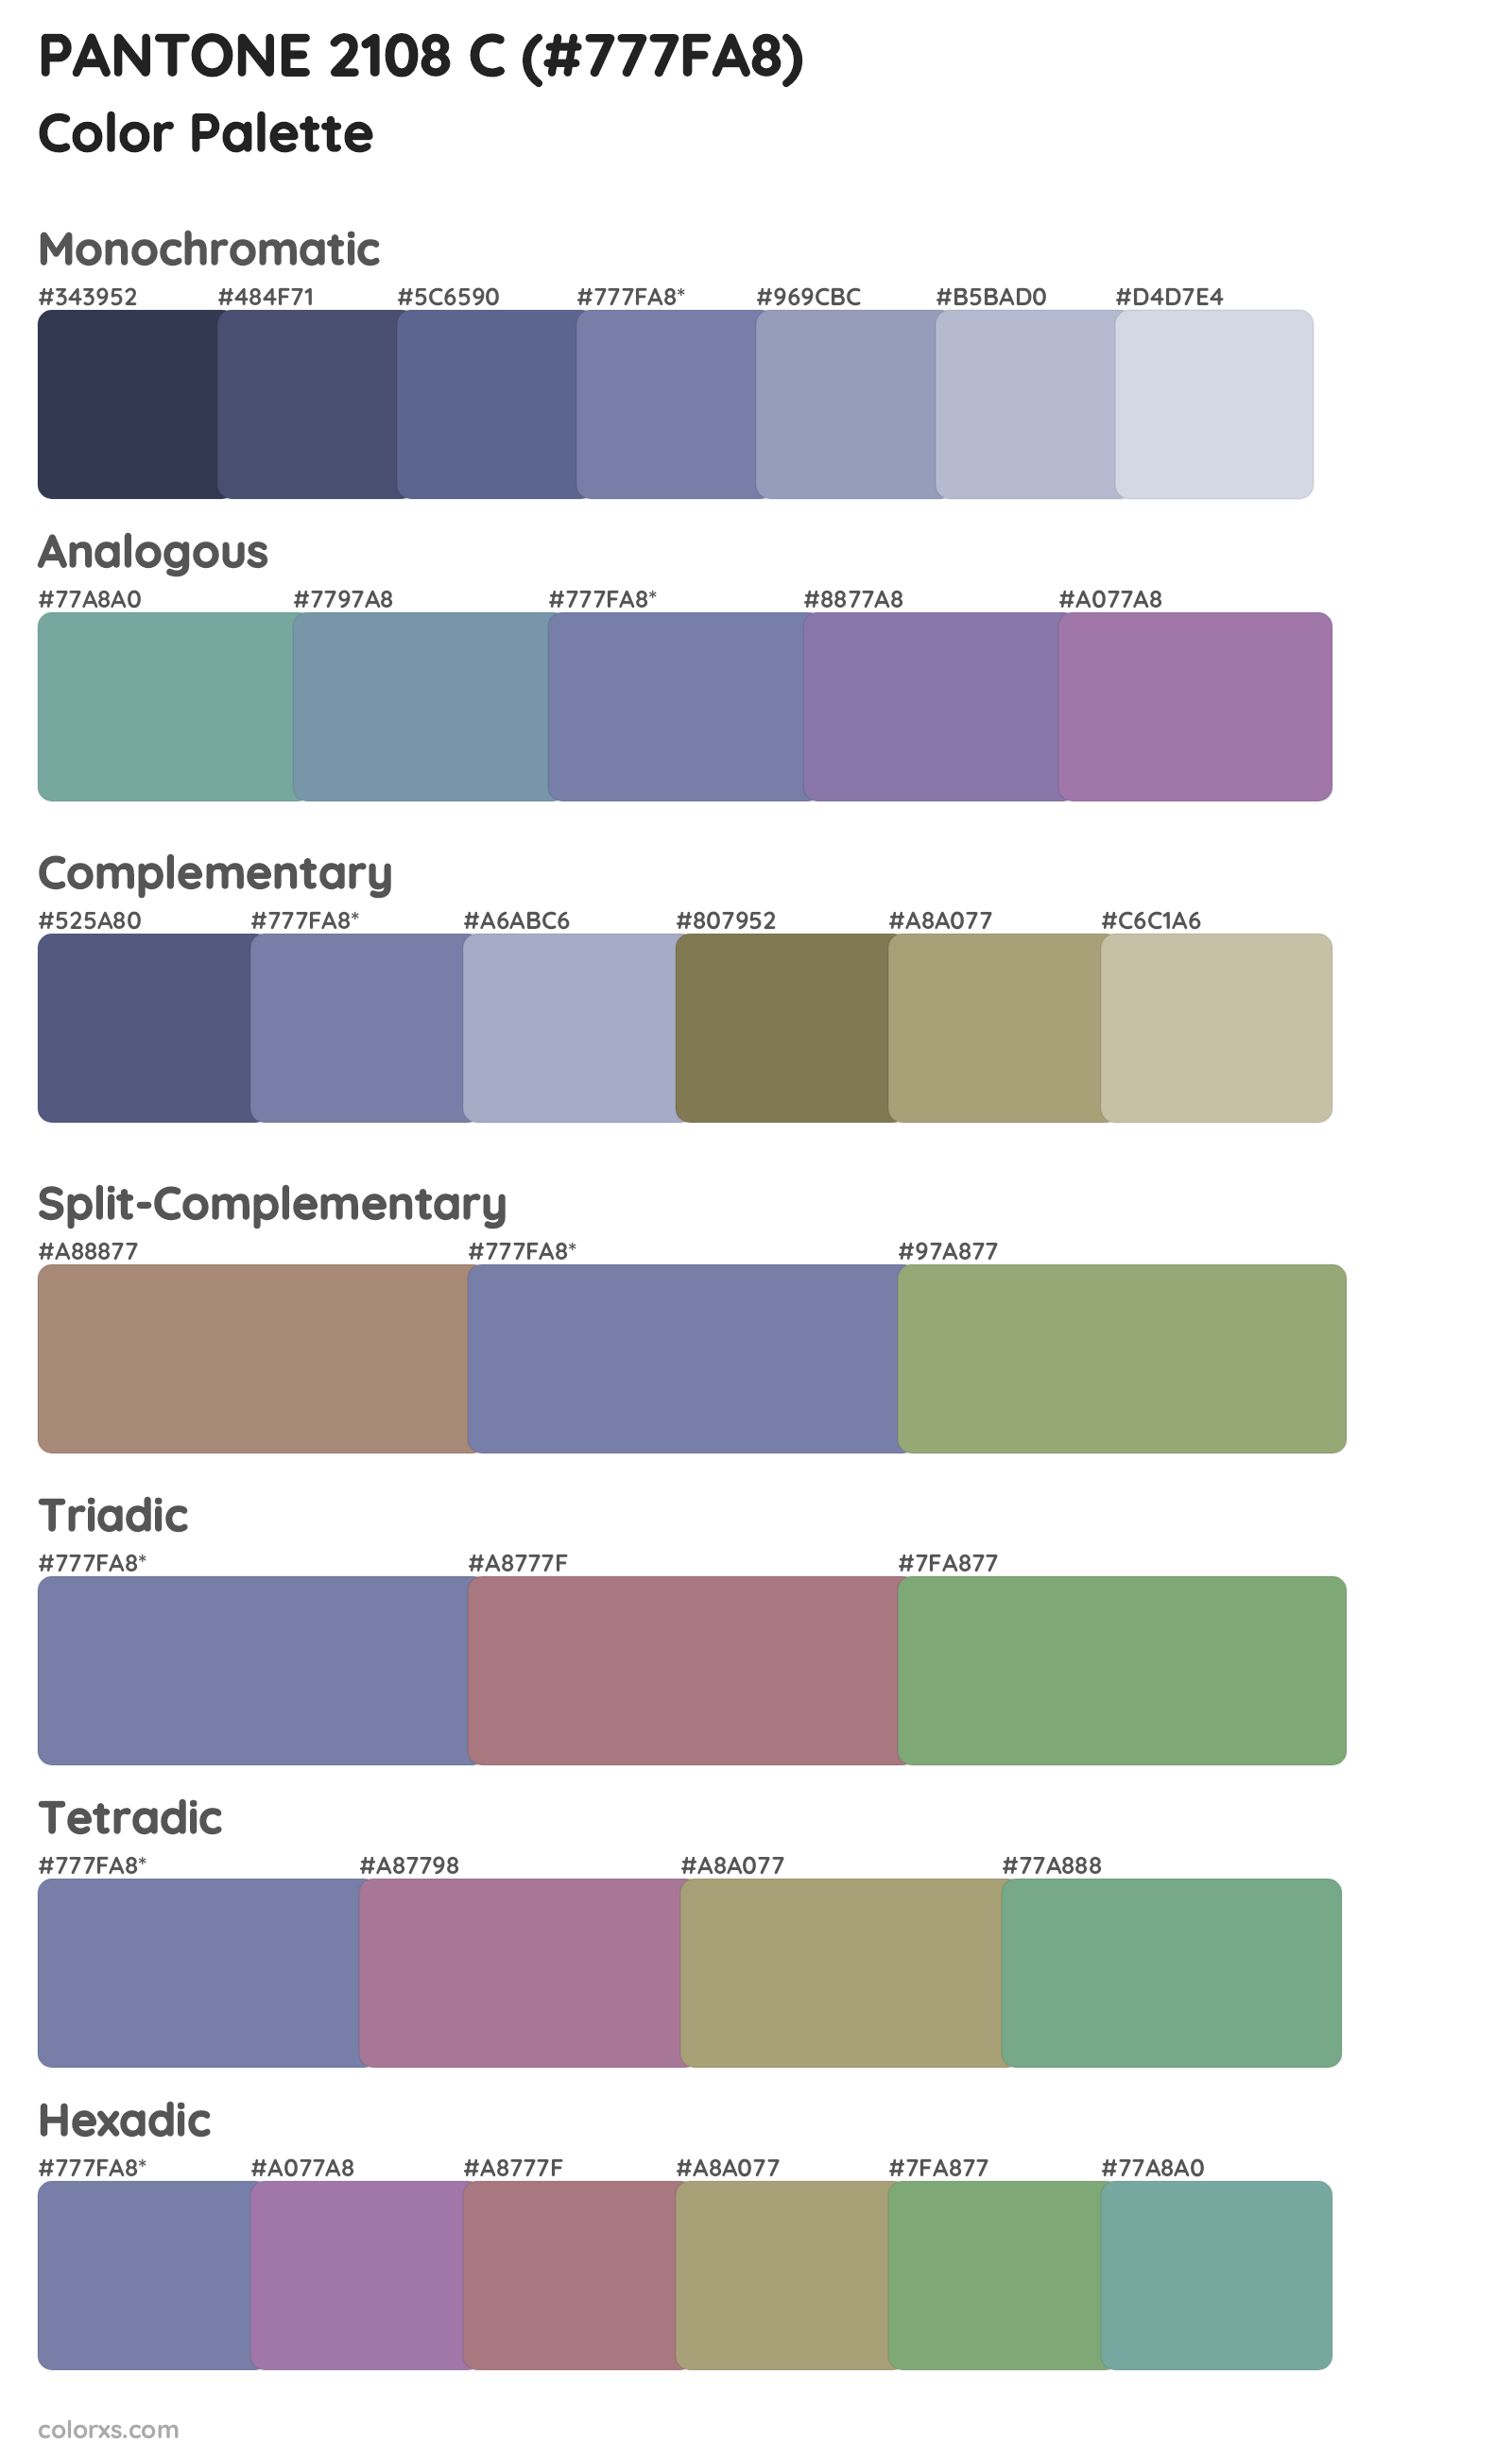 PANTONE 2108 C Color Scheme Palettes